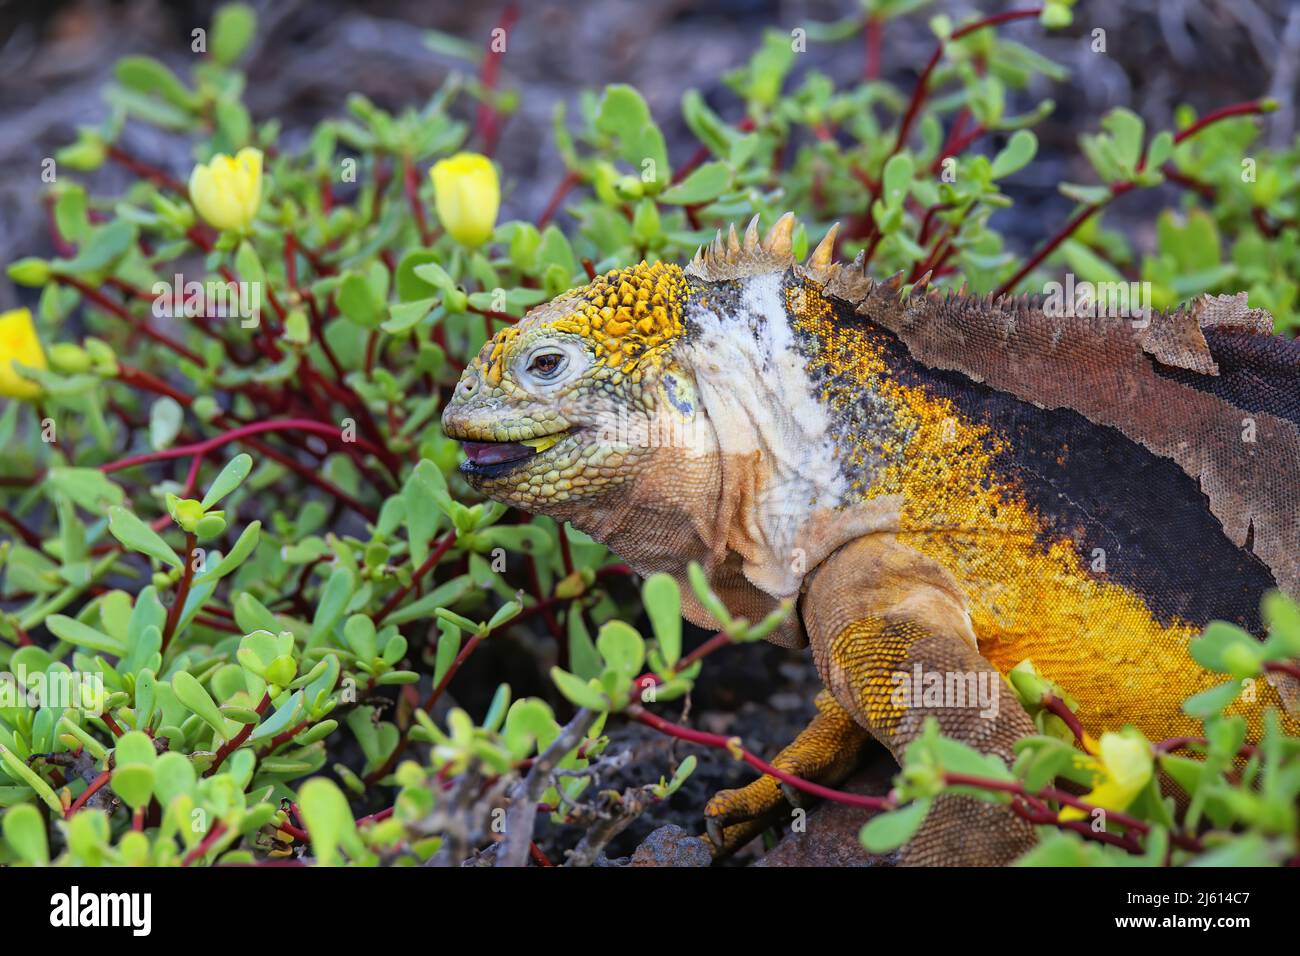 Iguana de la tierra de Galápagos (Conolophus subcrimatus) comiendo flores en la Isla South Plaza, Parque Nacional Galápagos, Ecuador. Distribución geográfica Es endémica de Galápagos Foto de stock